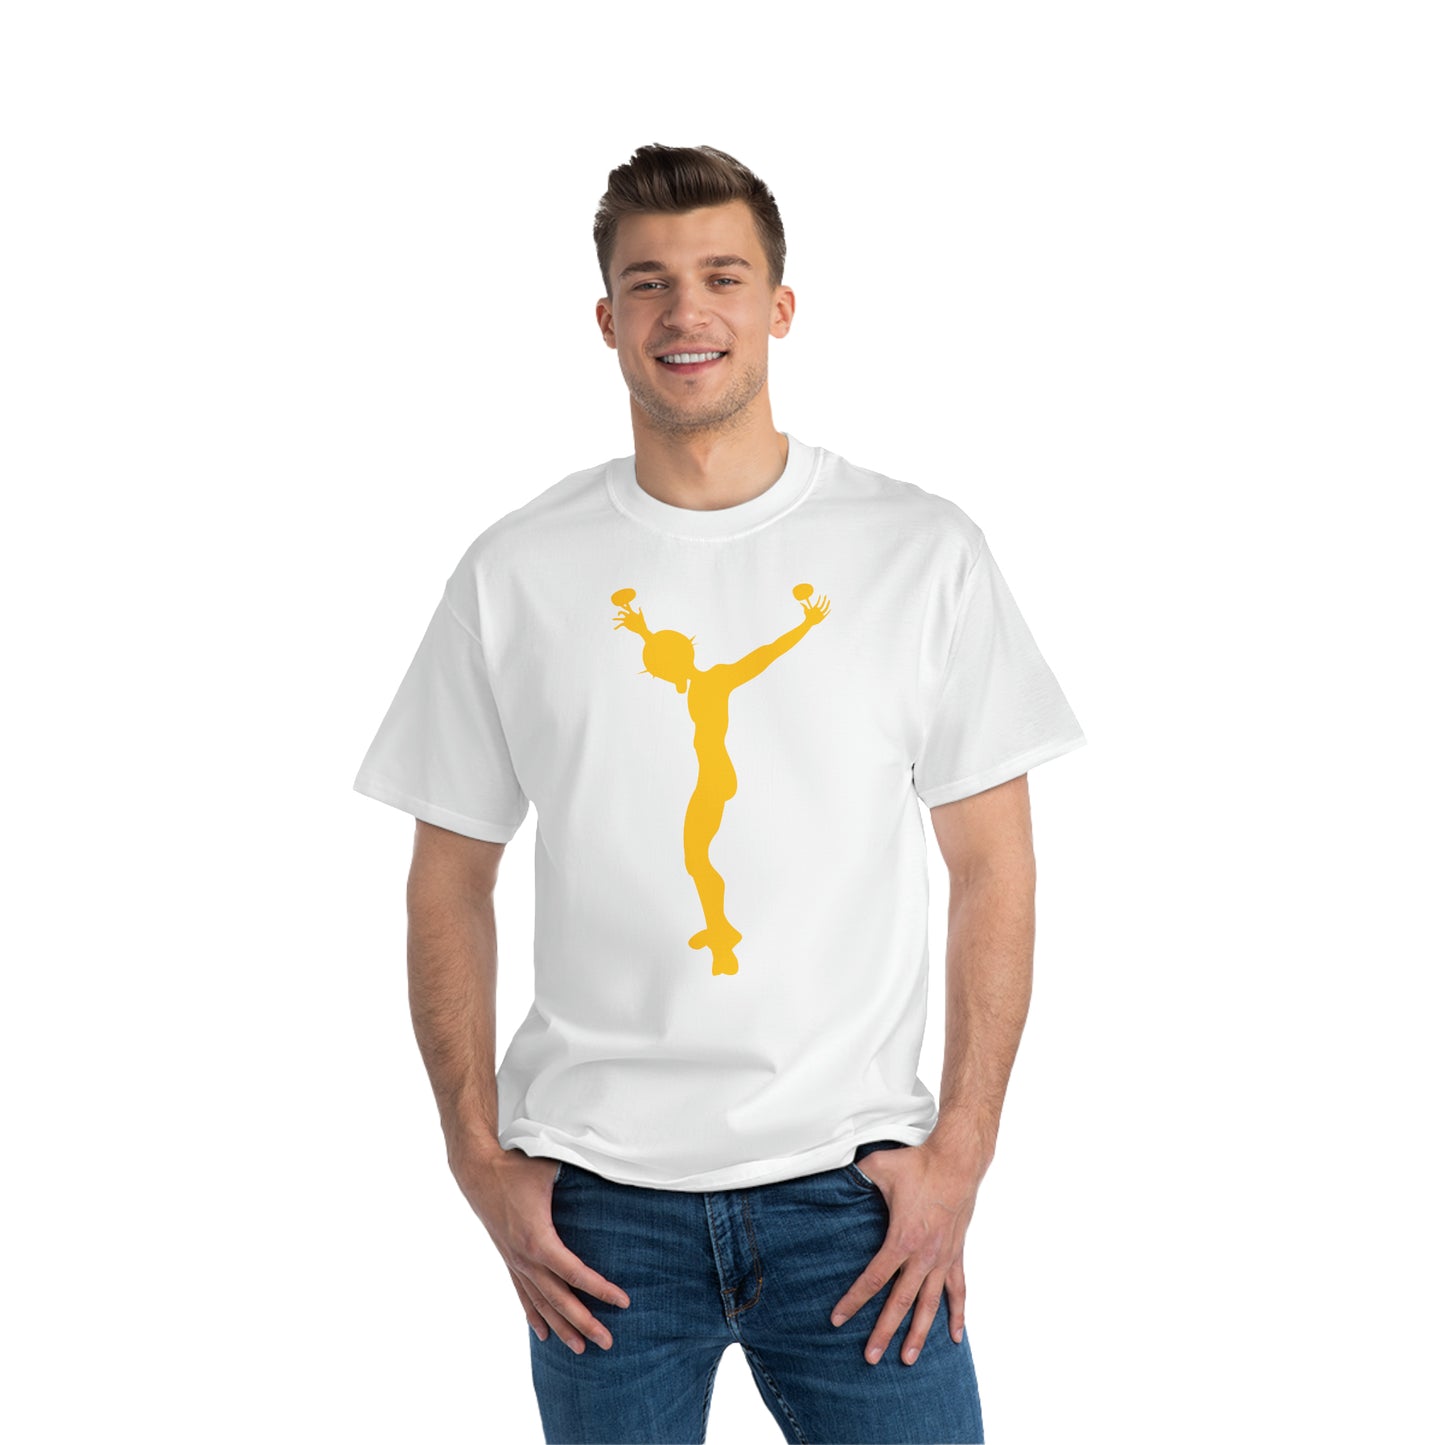 j7 T-shirt white-gold